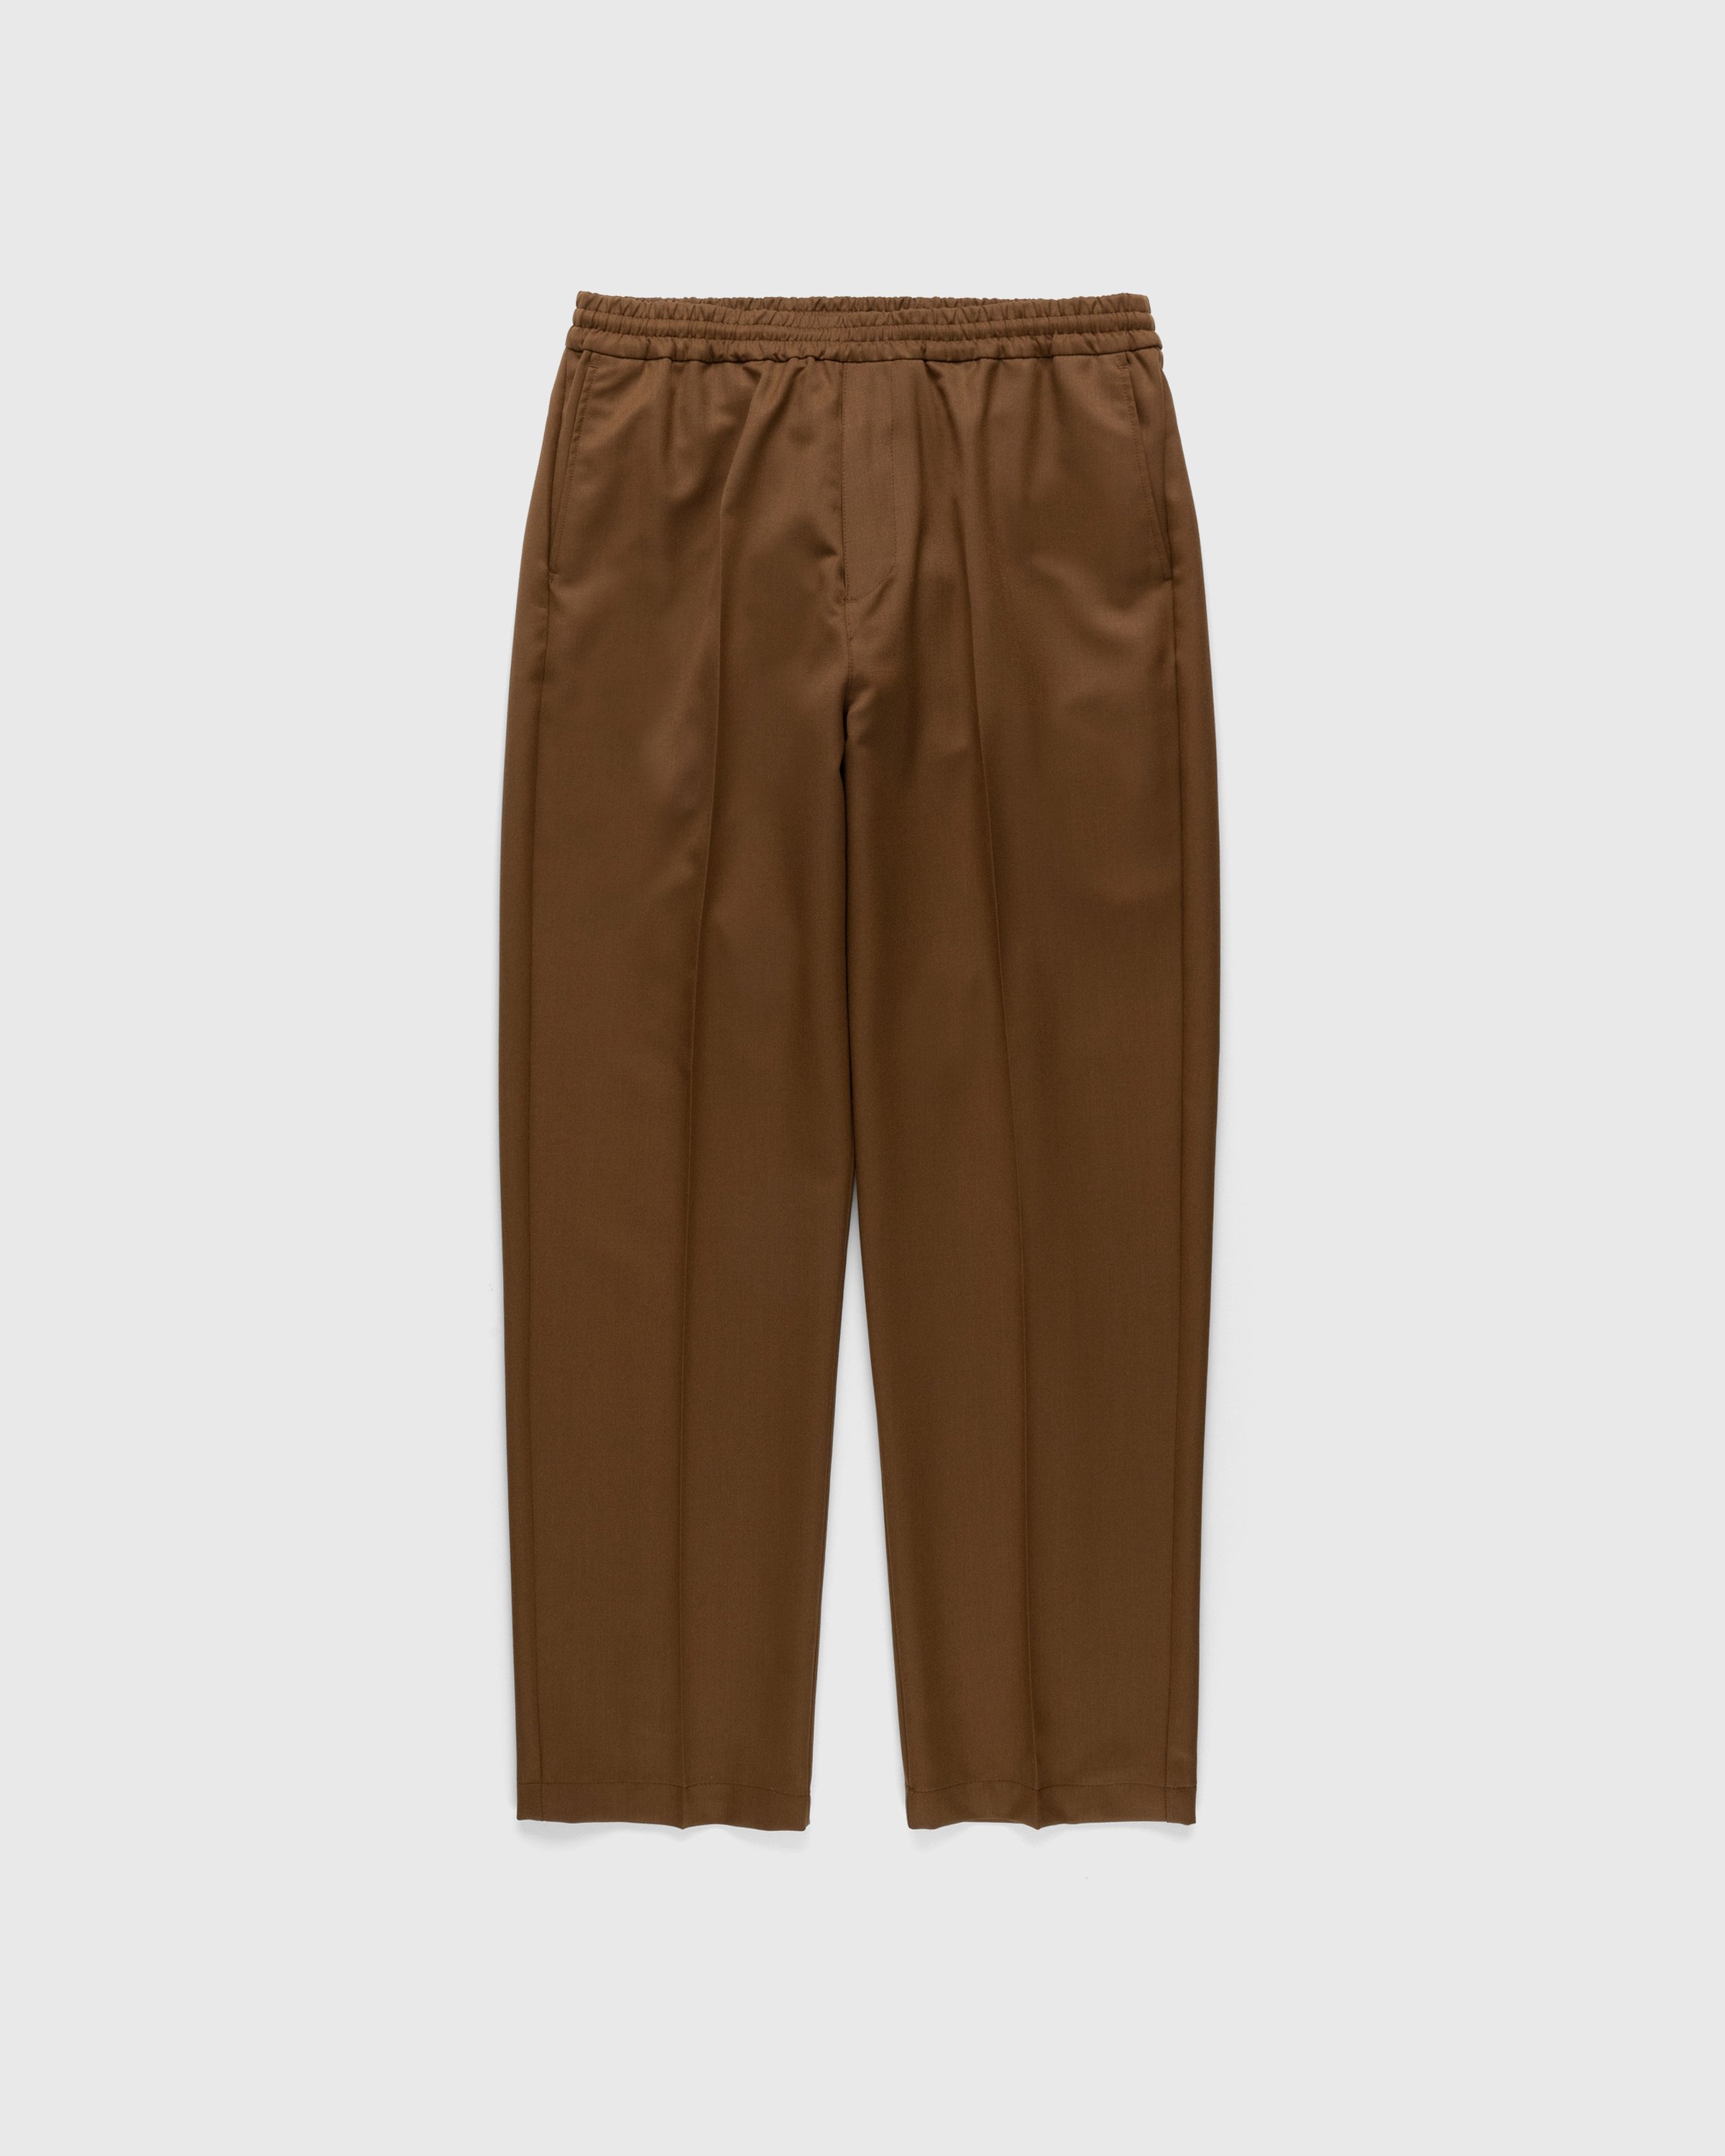 Highsnobiety - Wool Blend Elastic Pants Brown - Clothing - Brown - Image 1